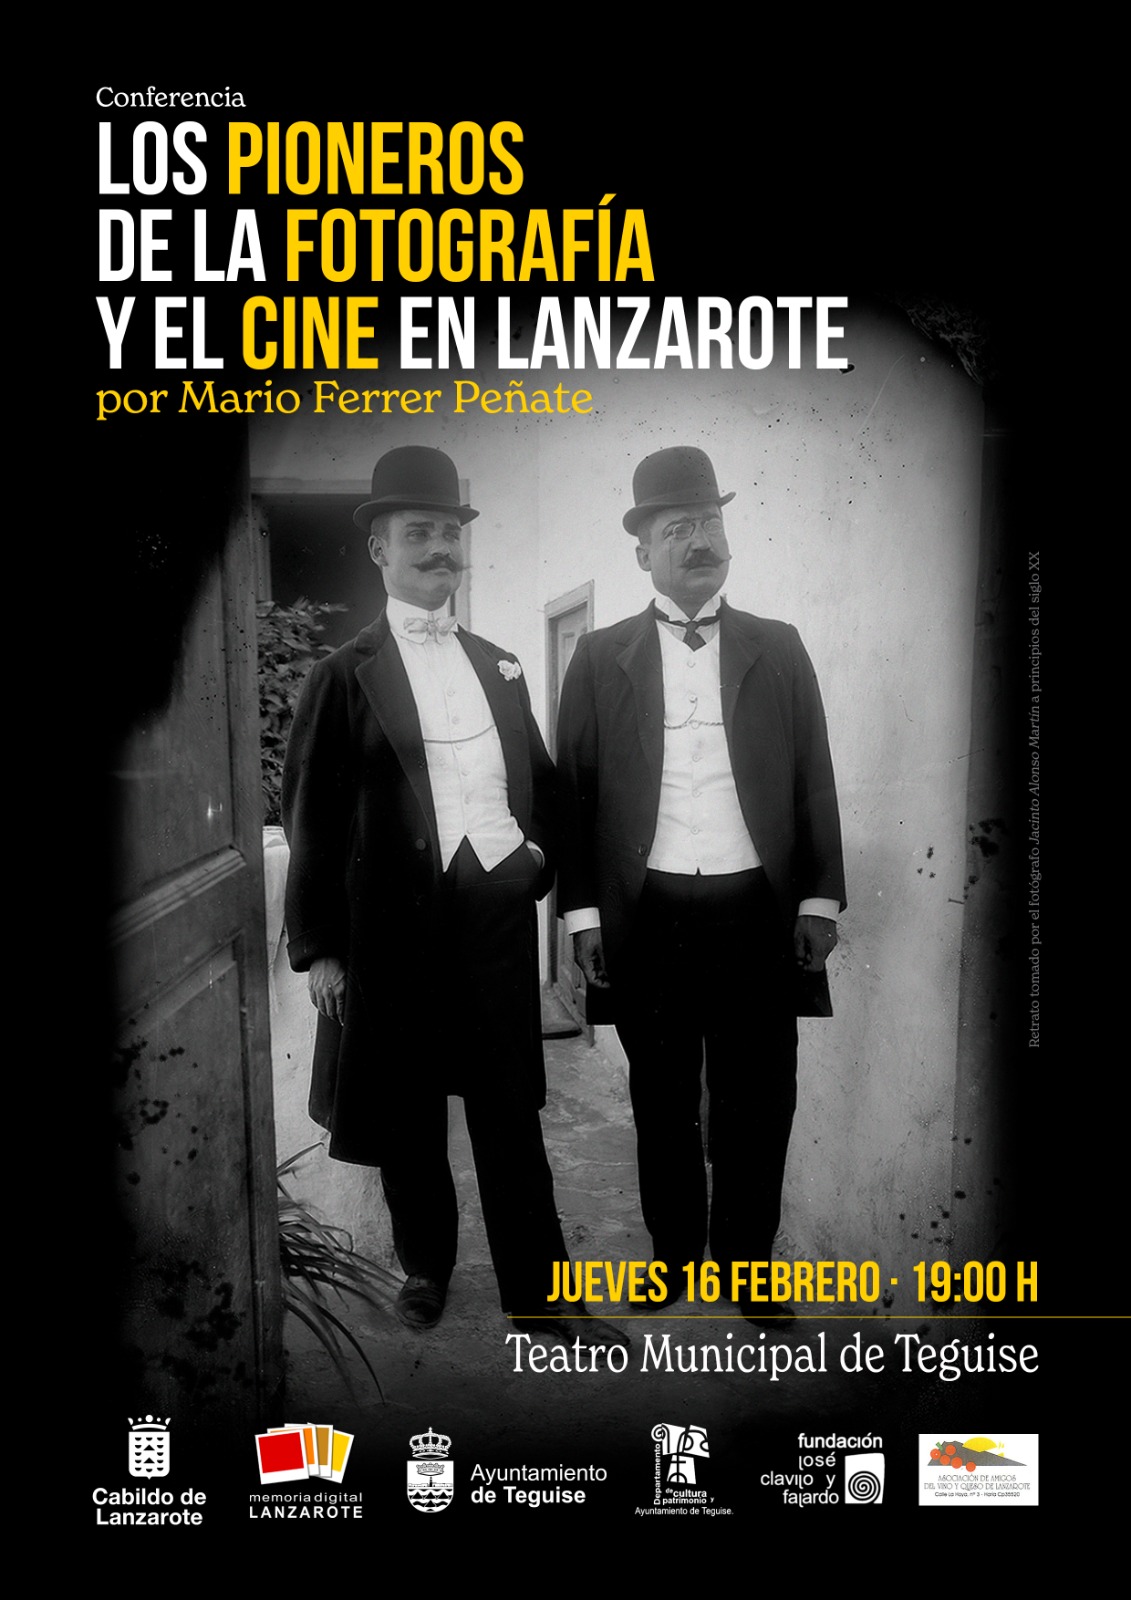 El Cabildo continúa en Teguise con el ciclo de conferencias sobre los pioneros de la fotografía y el cine en Lanzarote